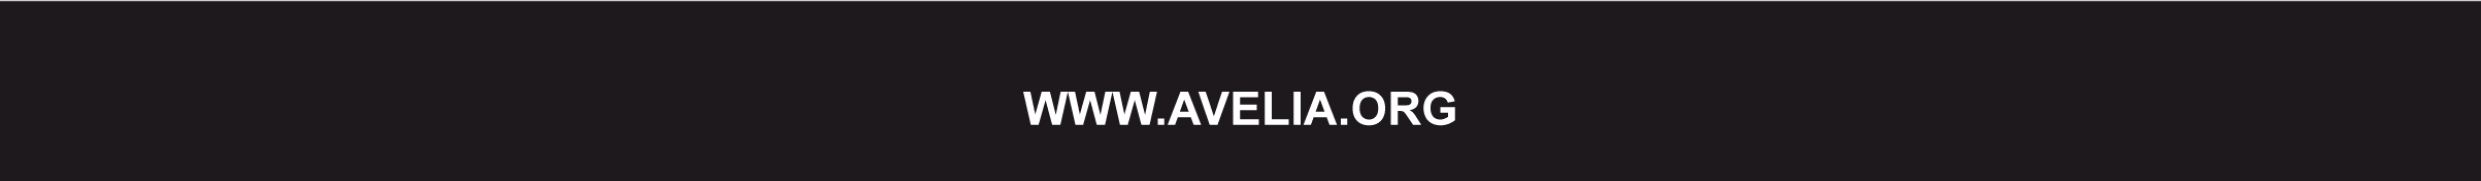 www.avelia.org